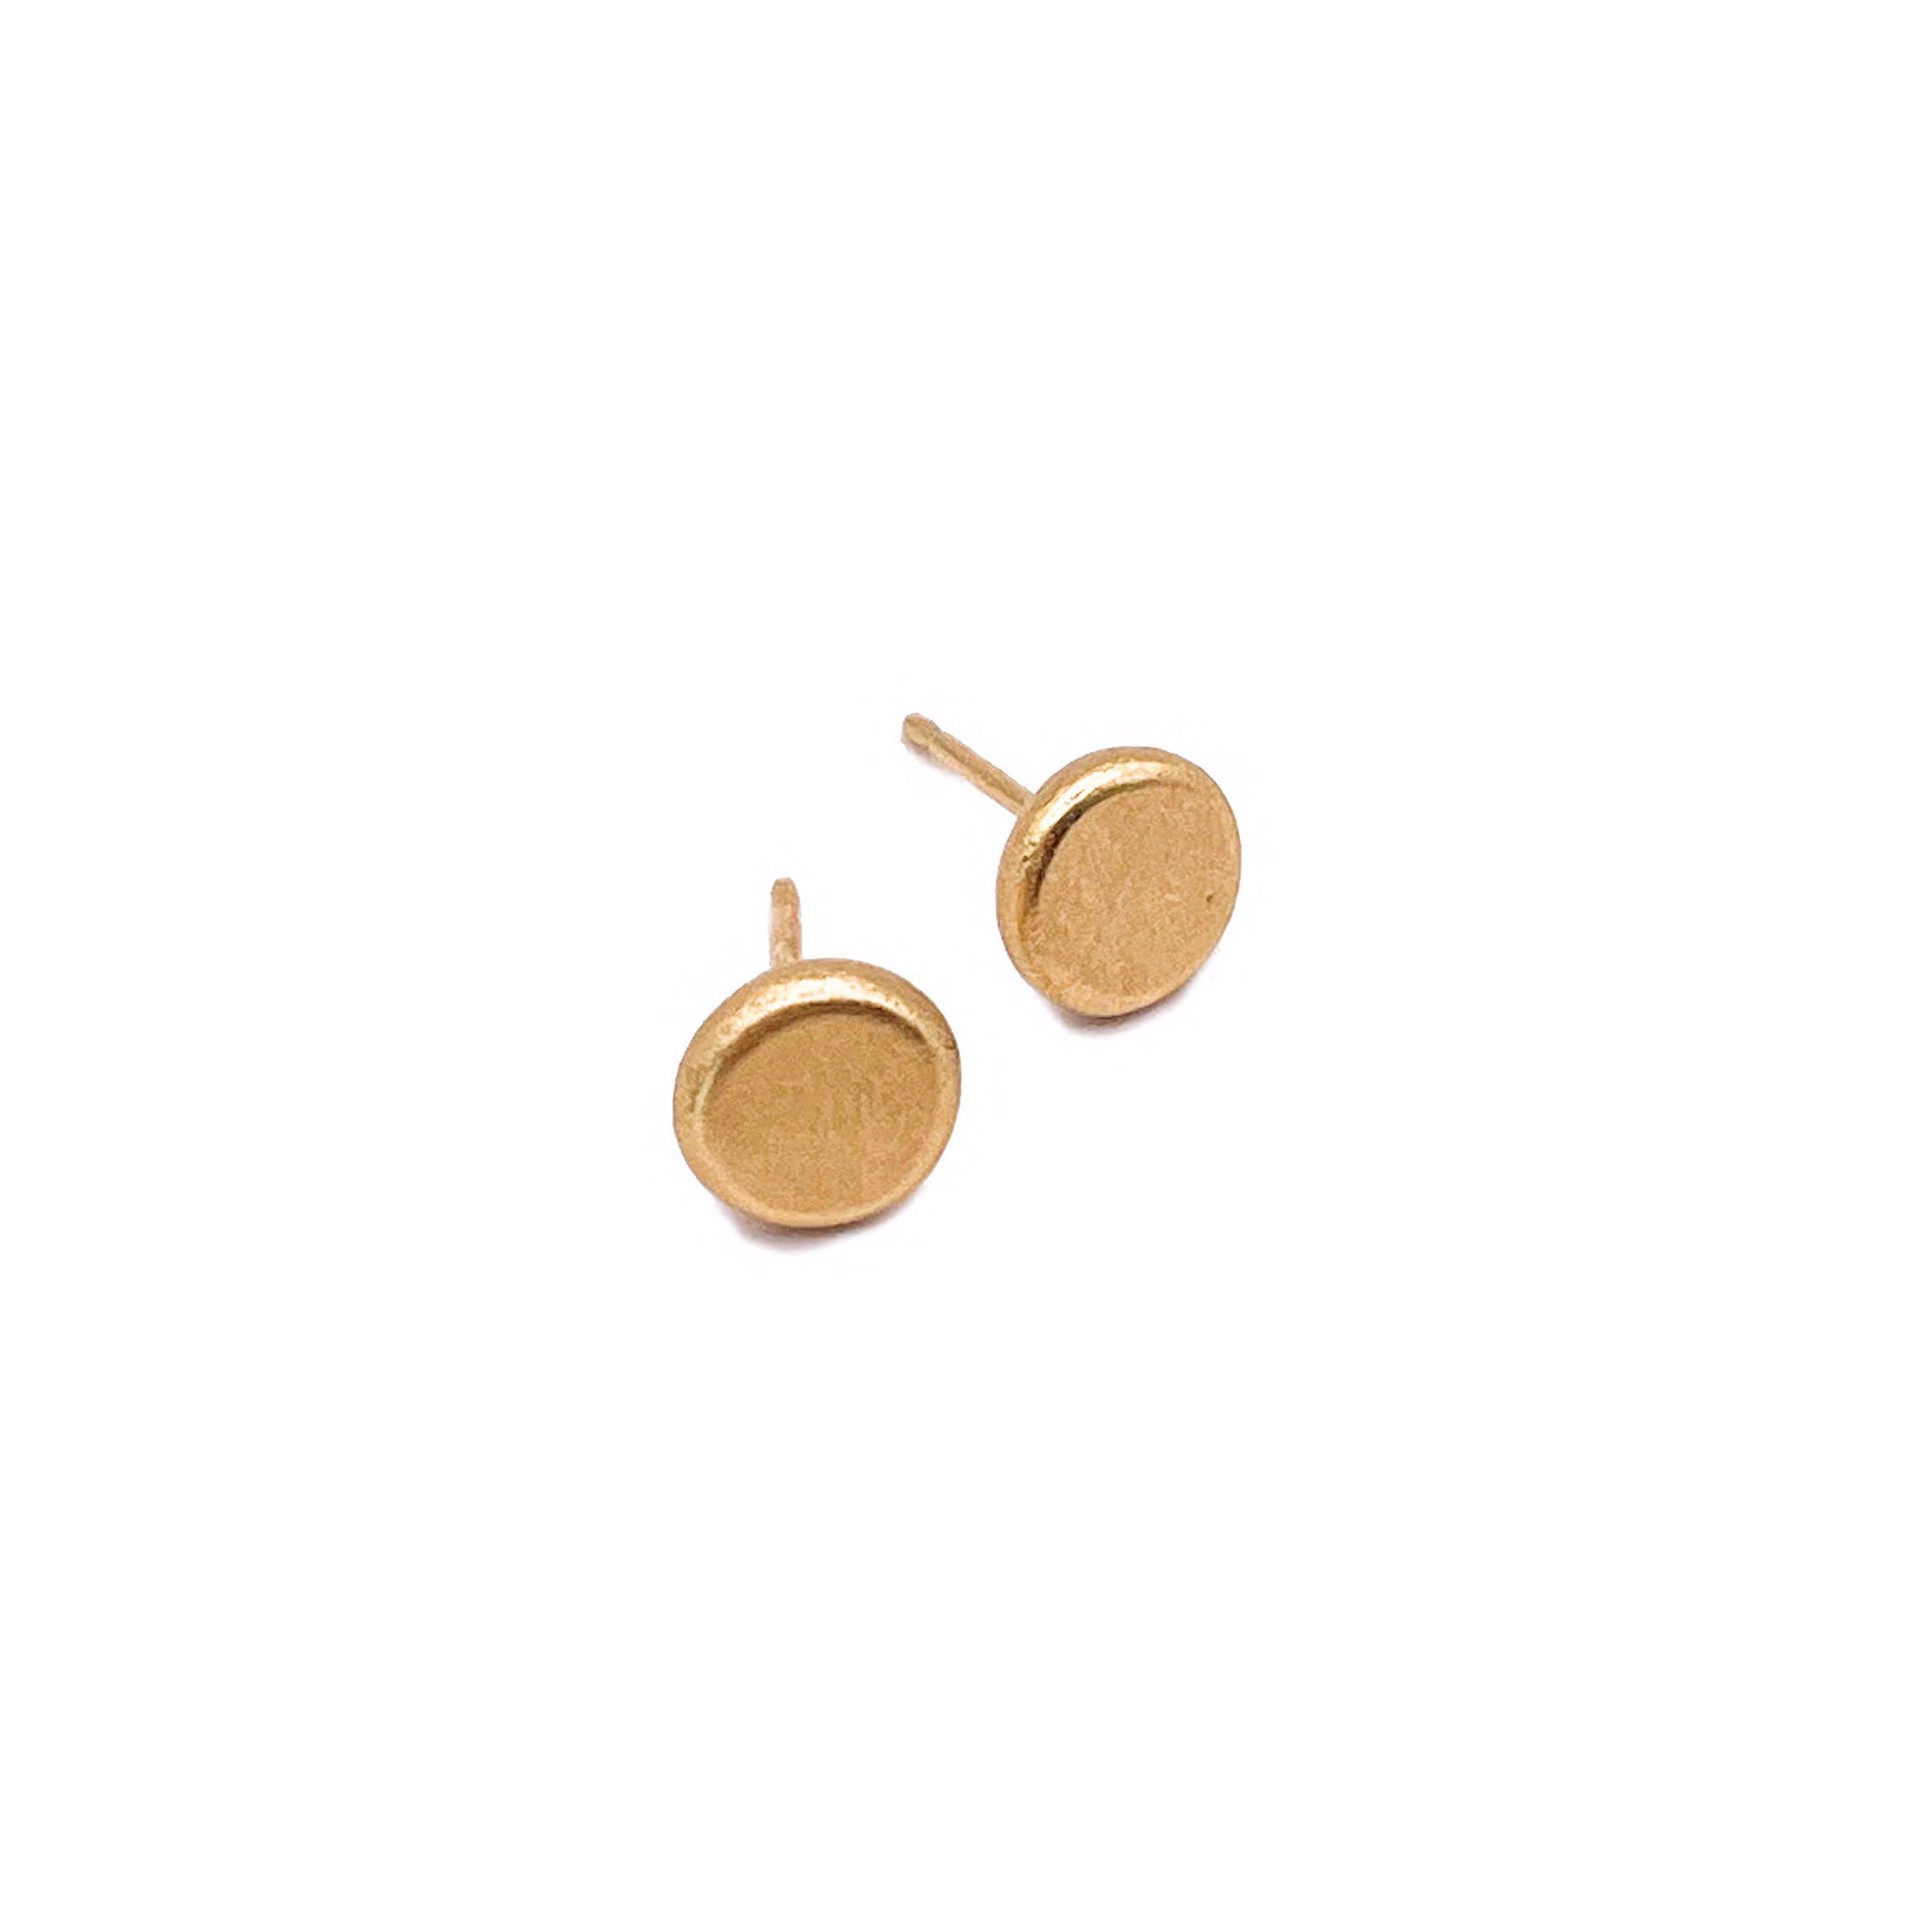 LHE15- Serendipity stud earrings, 18k by Leandra Hill